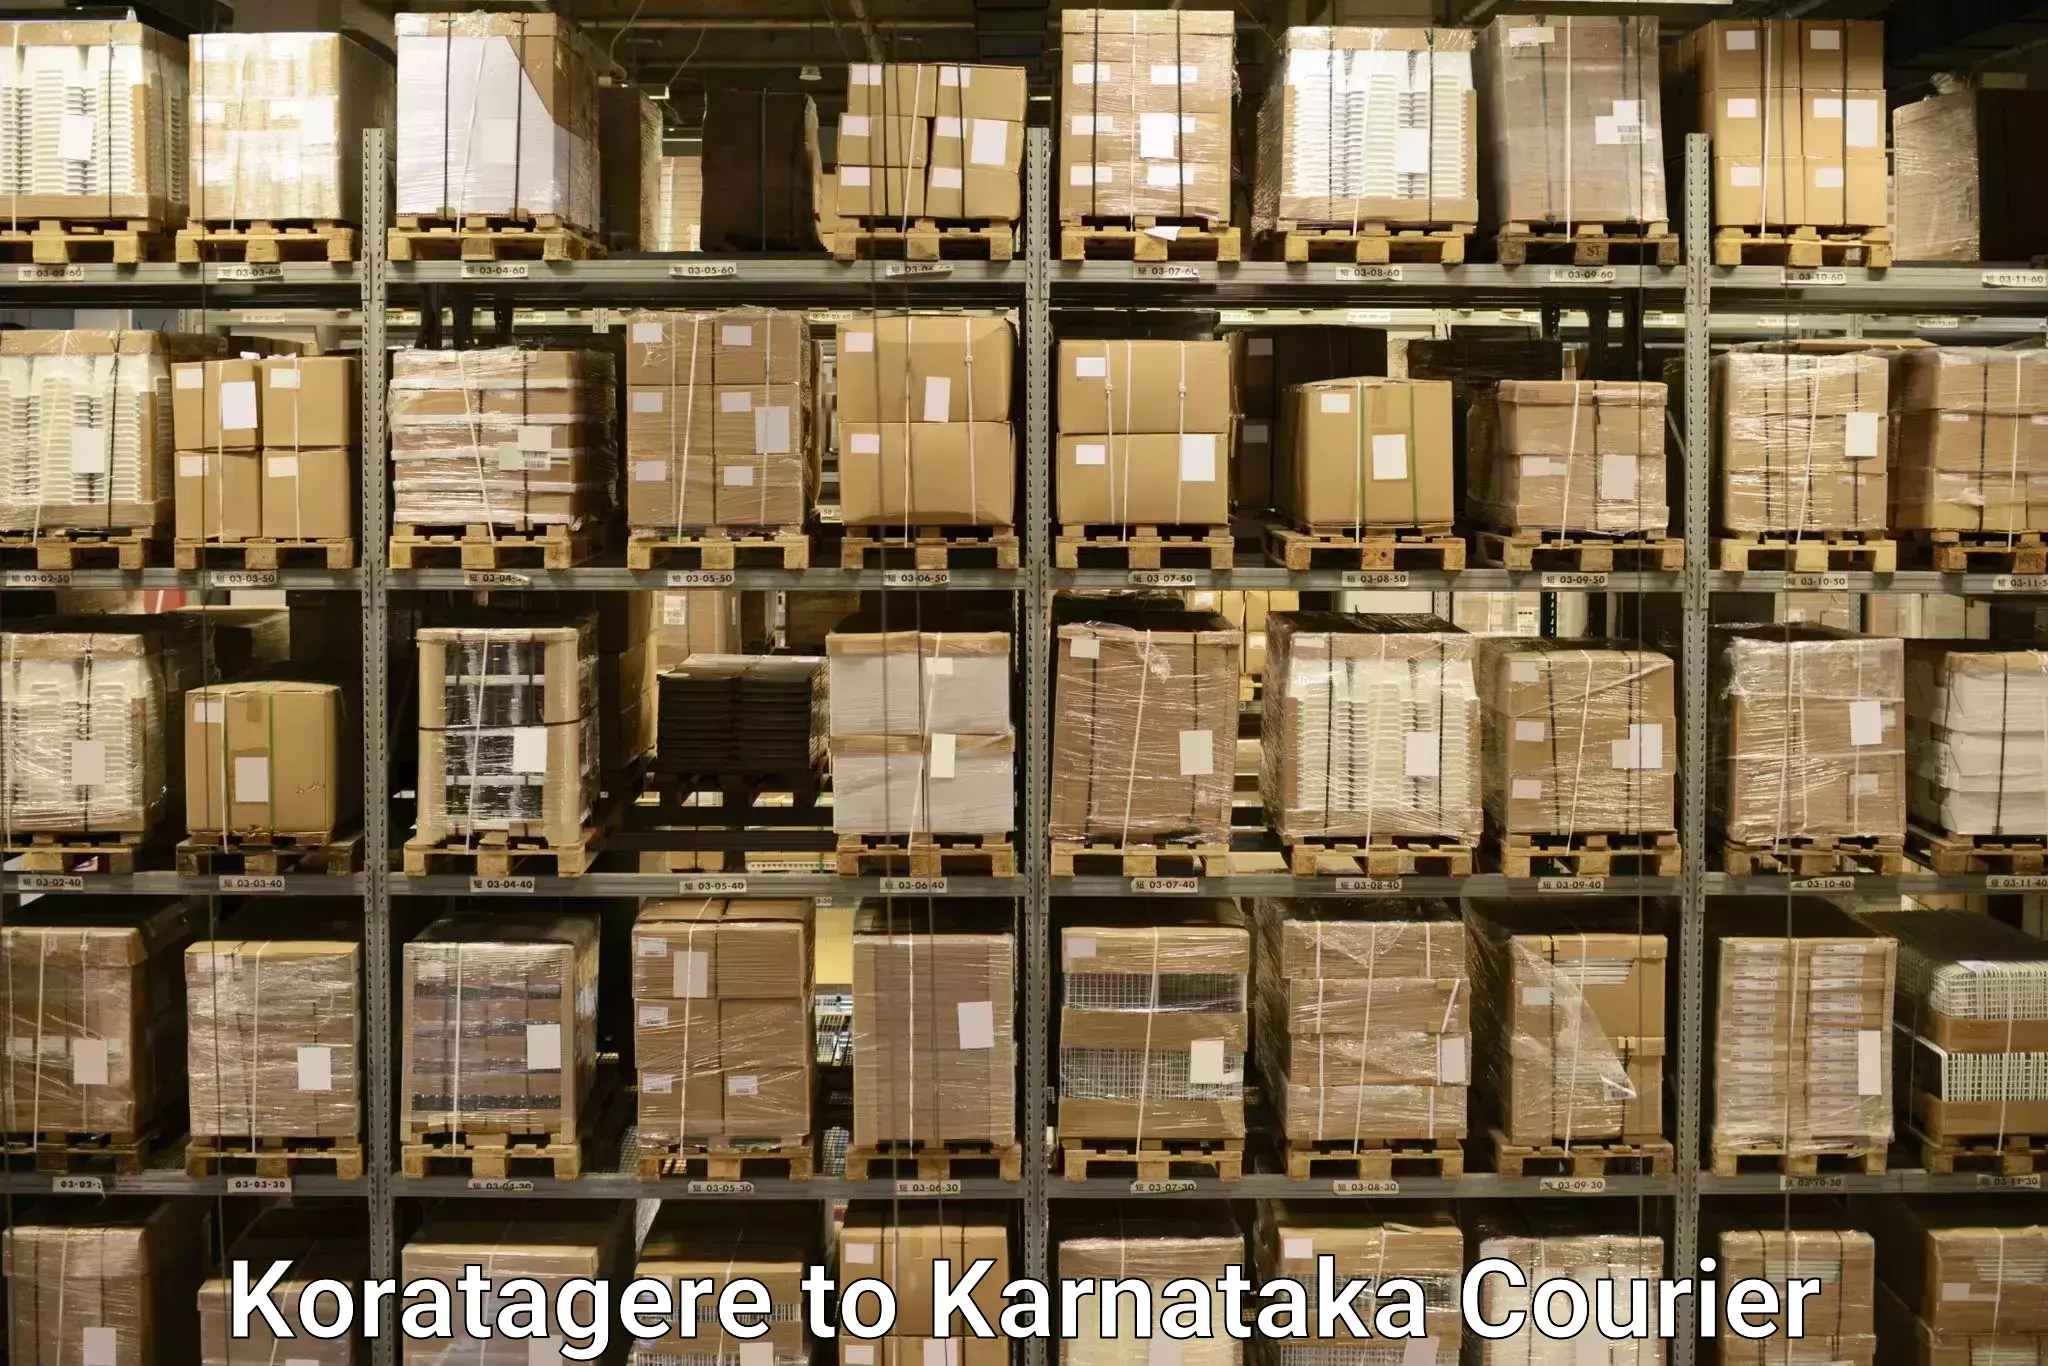 Long distance luggage transport Koratagere to Karnataka